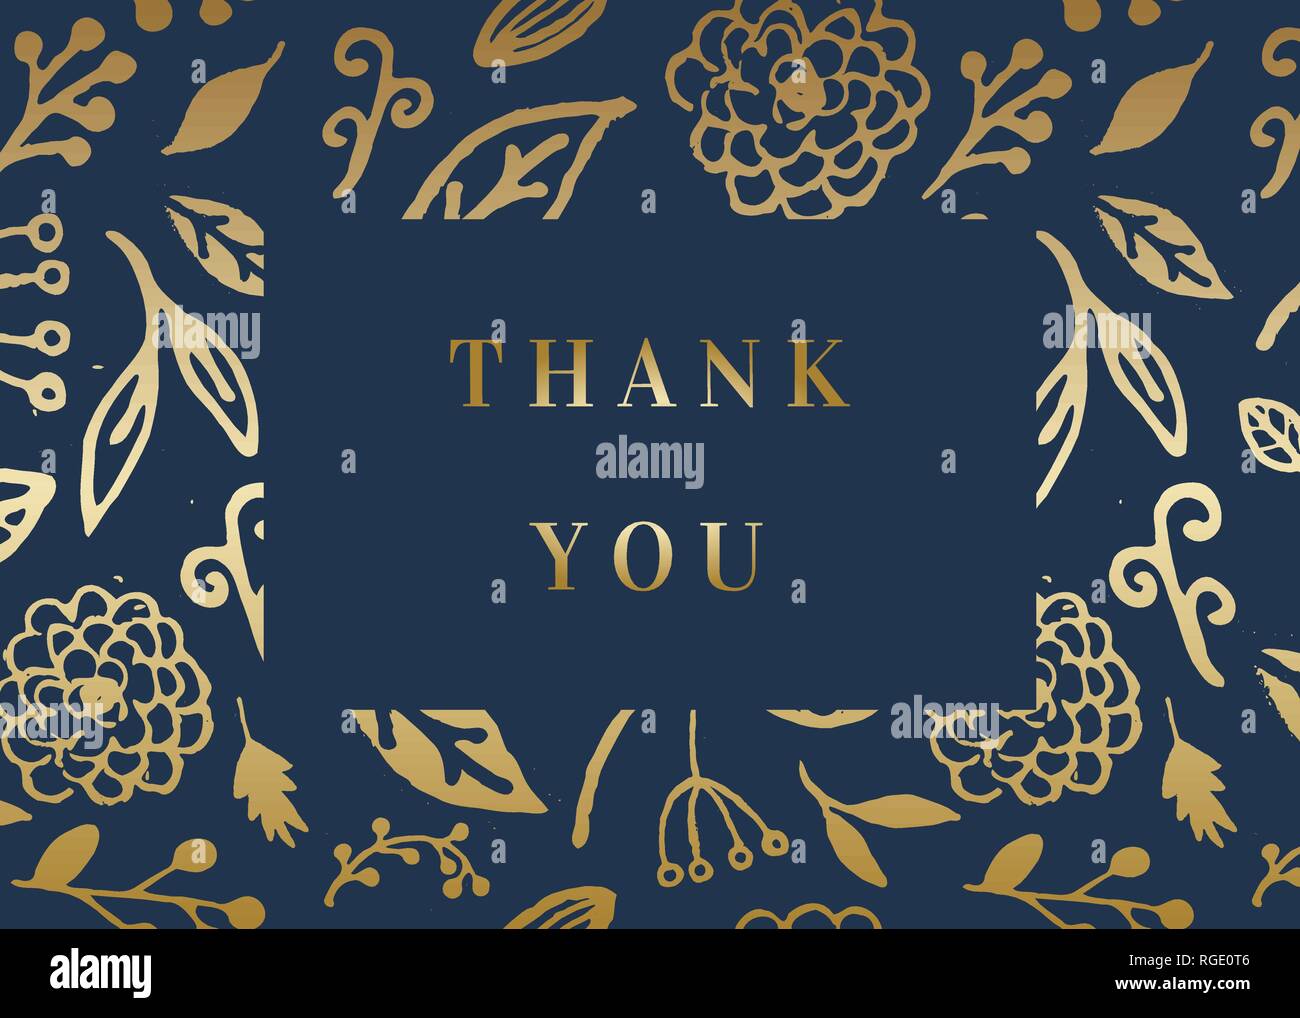 Tạo ấn tượng với thẻ cảm ơn của bạn với mẫu thiết kế hoa vàng tươi trên nền xanh đậm. Thẻ bè vô giá cho những người bạn và đối tác của bạn. Hãy tới xem ngay để biết thêm chi tiết. 